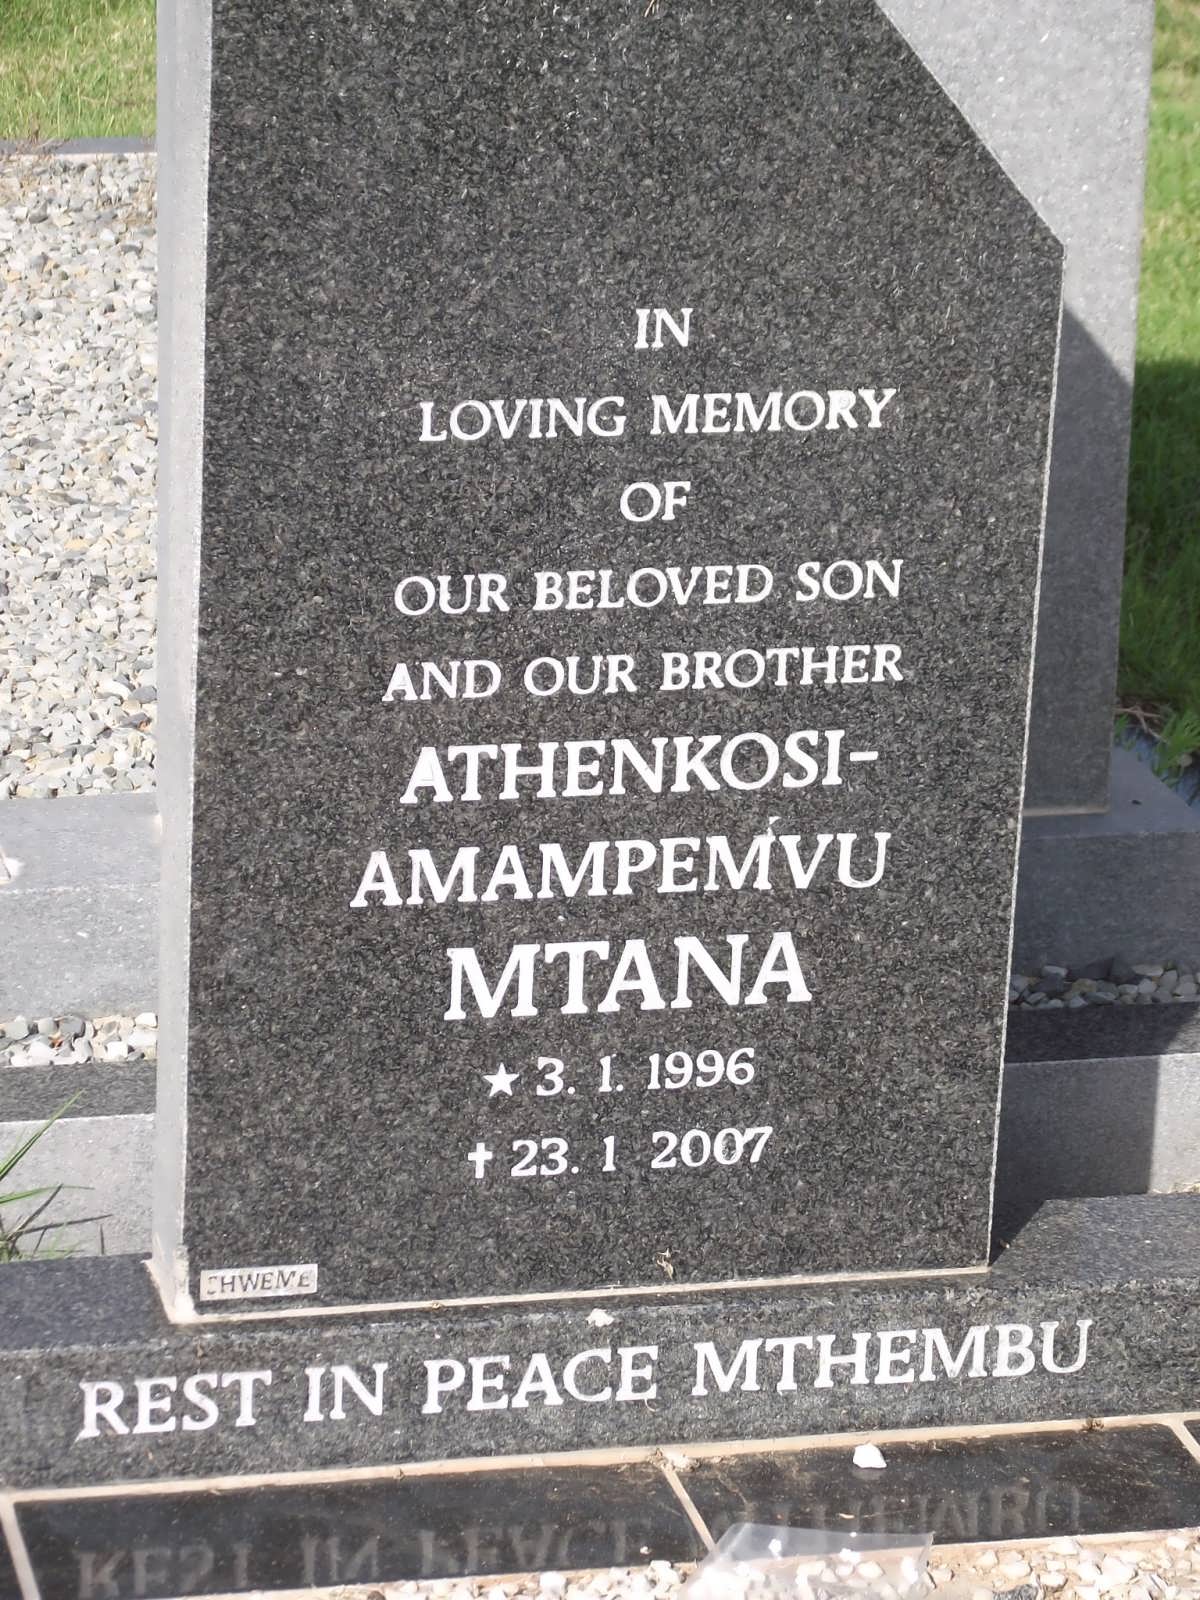 MTANA Athenkosi Amampemvu 1996-2007